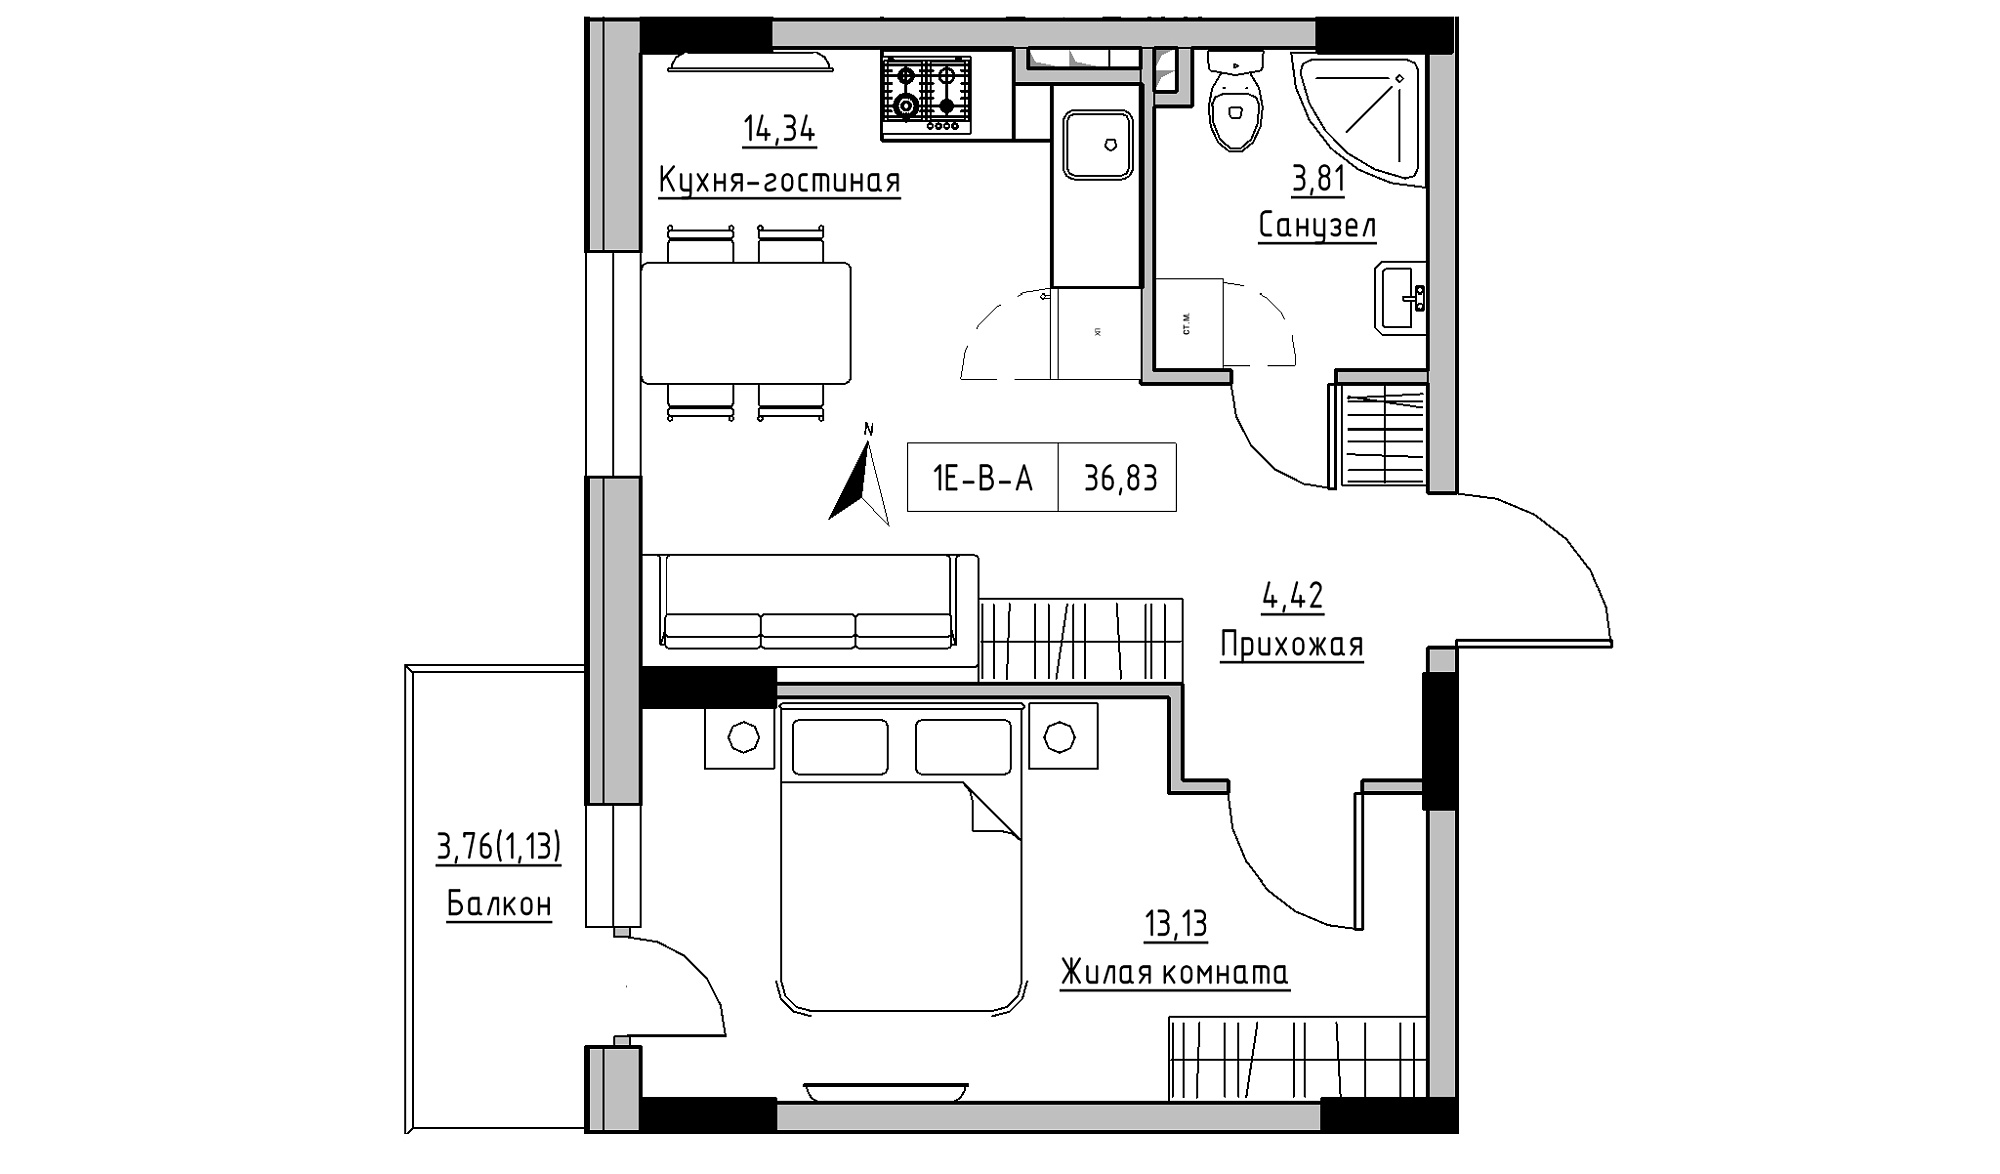 Планировка 1-к квартира площей 36.83м2, KS-025-02/0004.